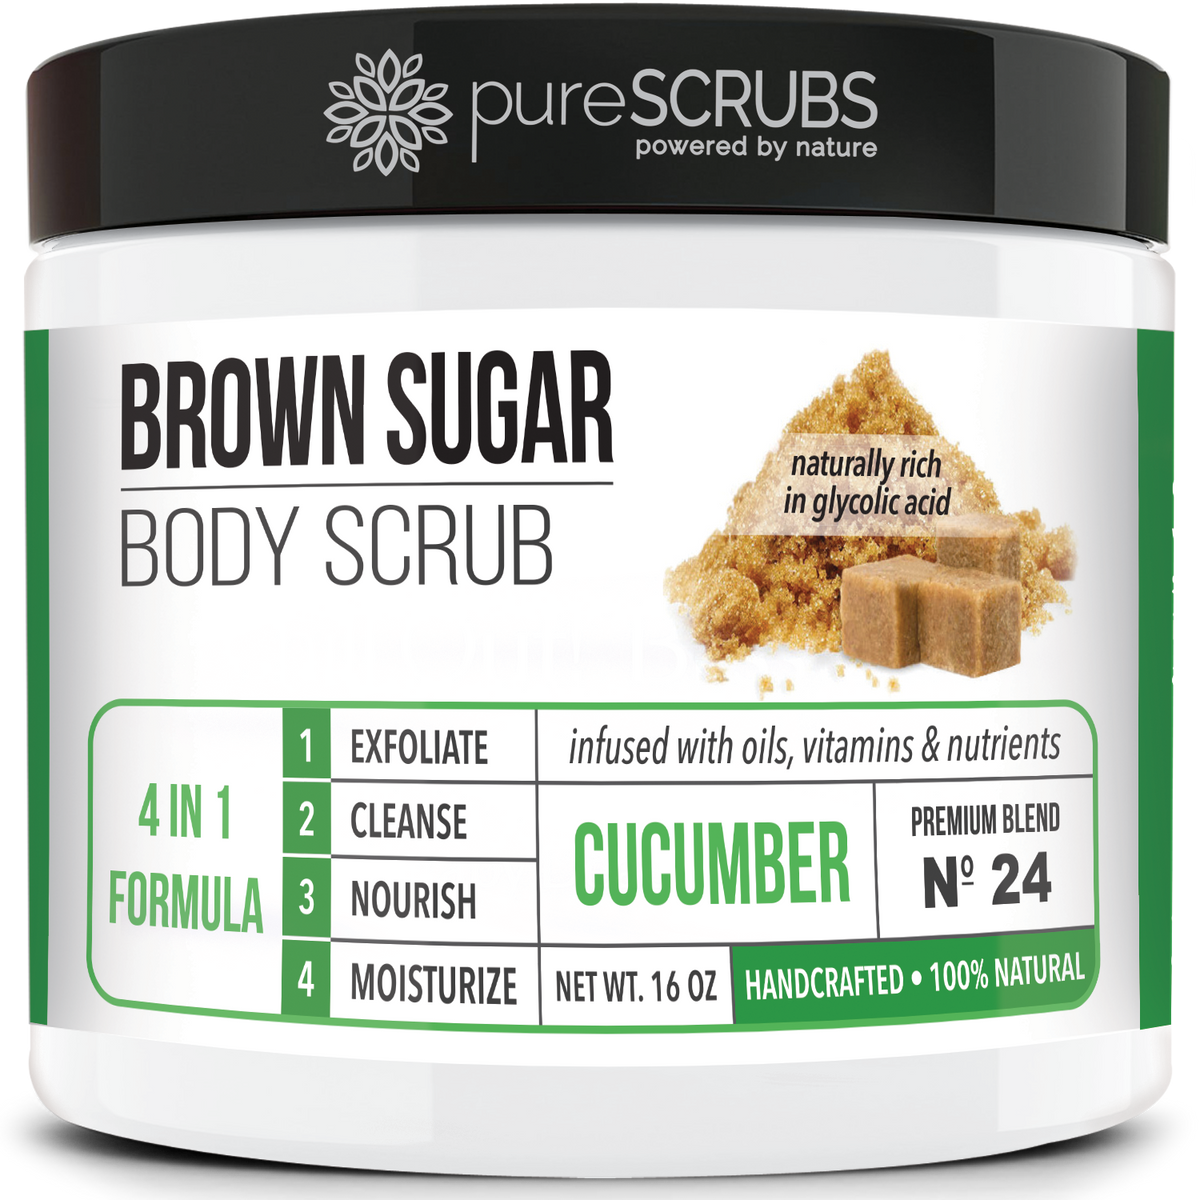 Cucumber Body Scrub / Brown Sugar / Premium Blend #24